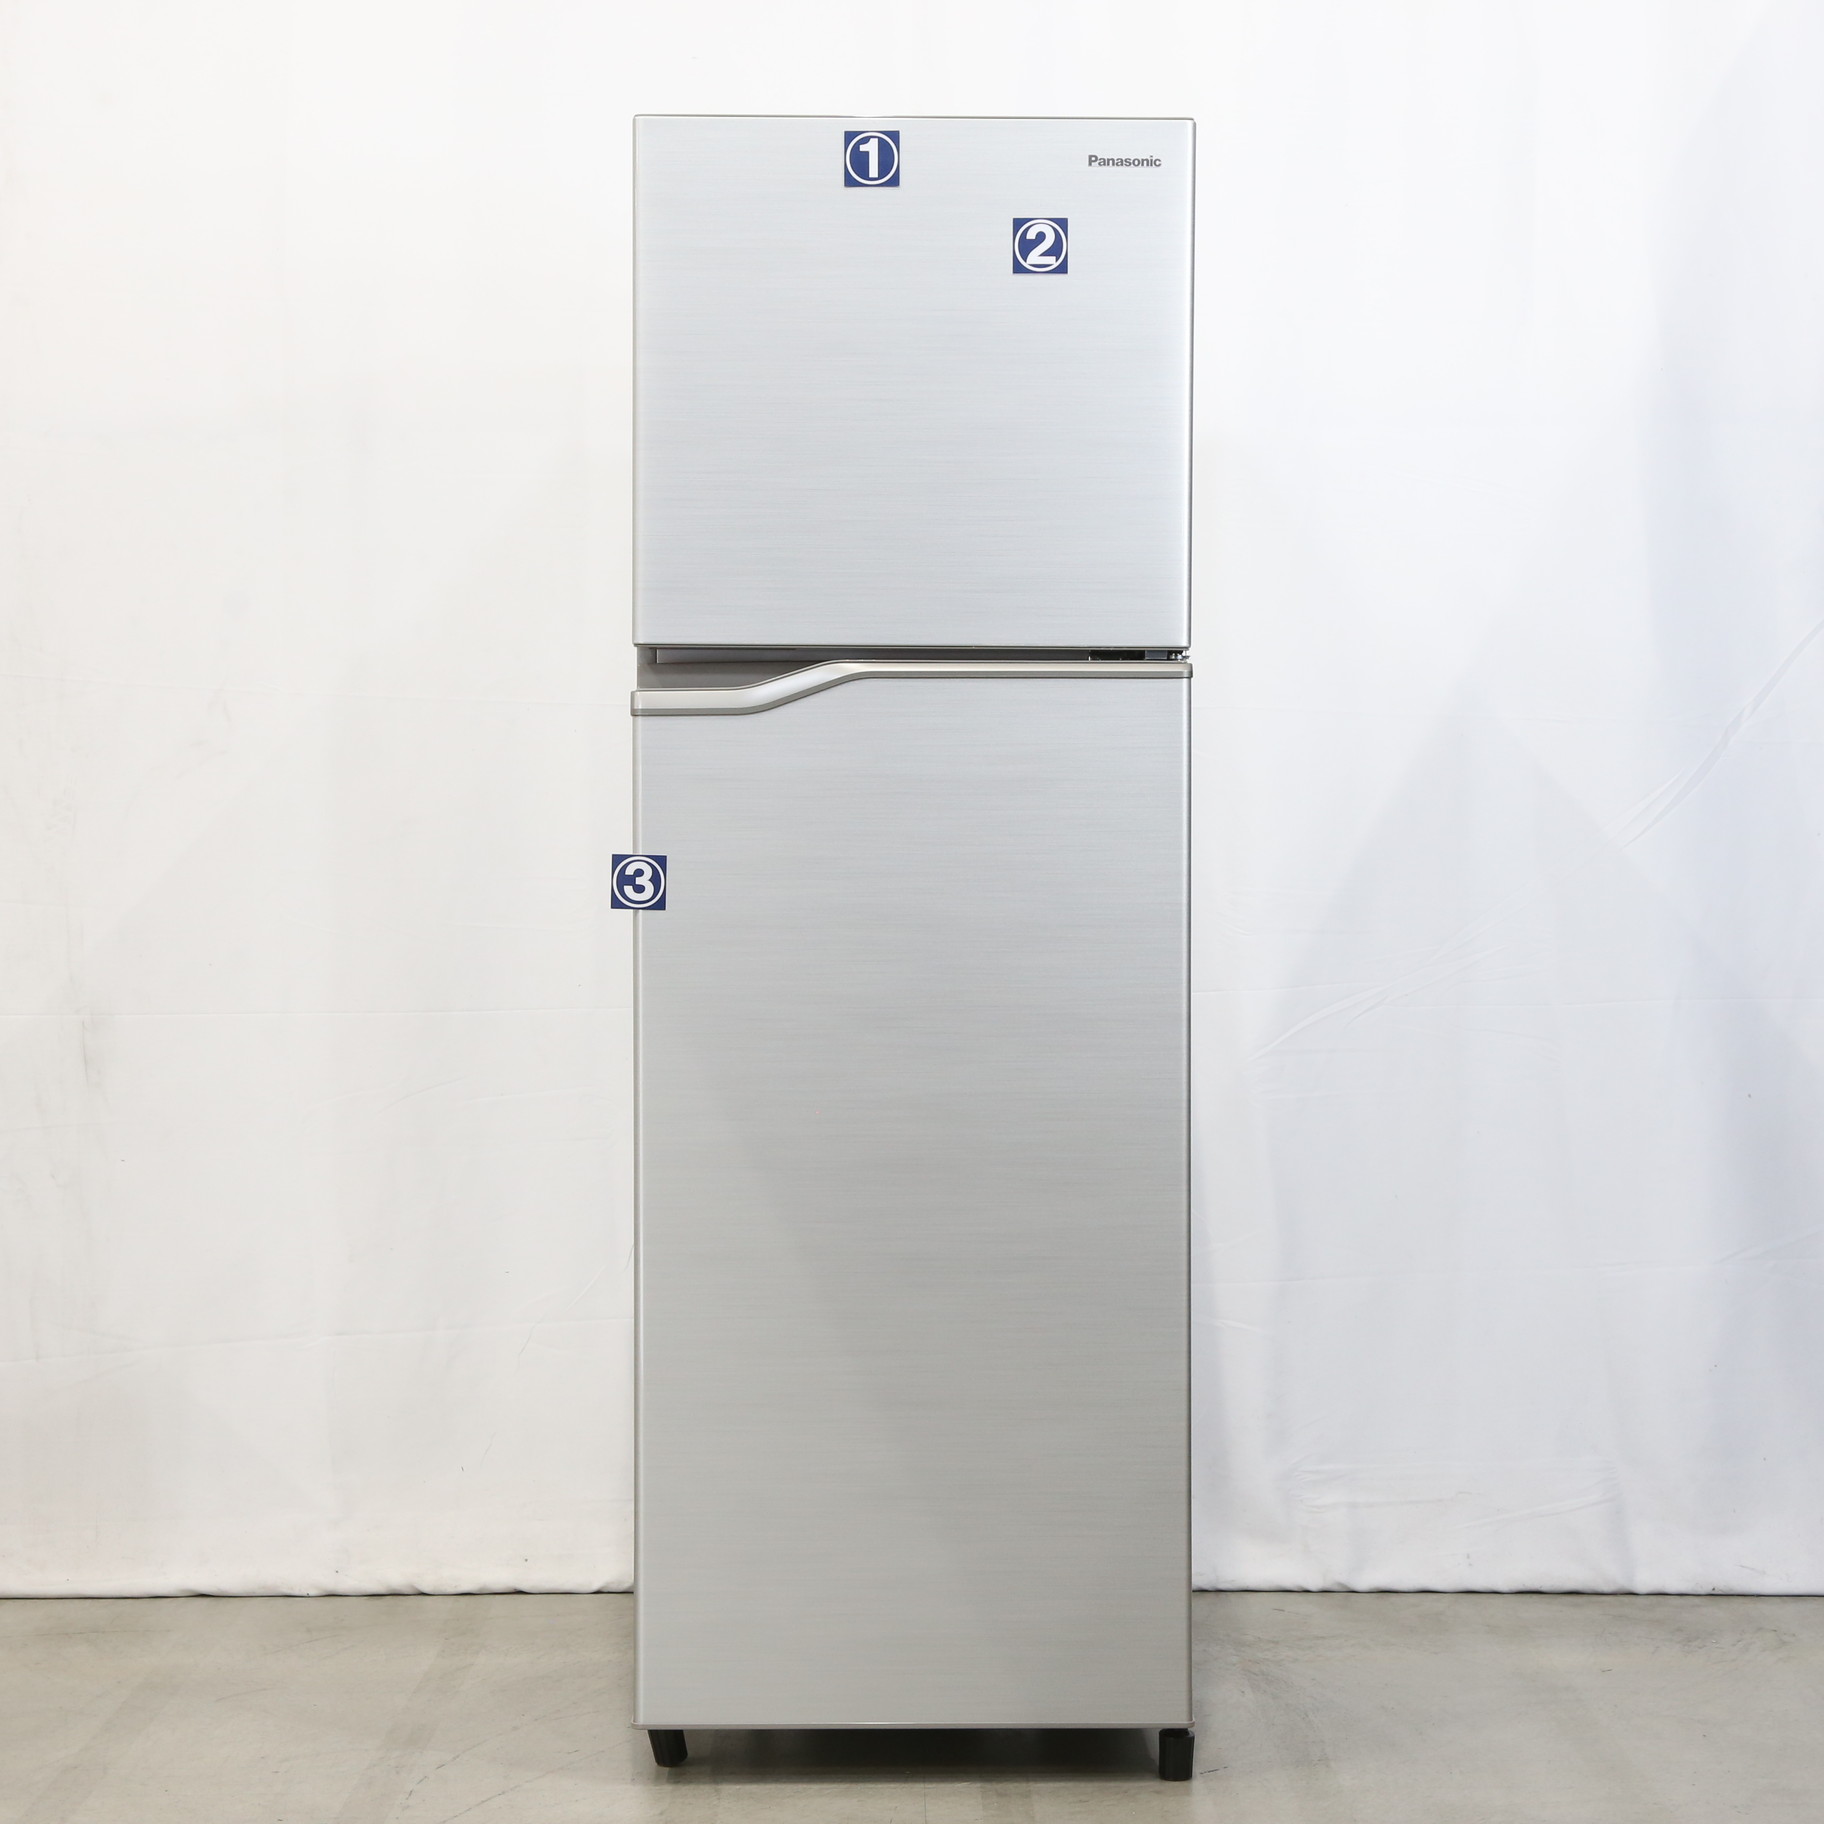 2018年製 Panasonic/パナソニック NR-B250T-SS ノンフロン冷凍冷蔵庫 